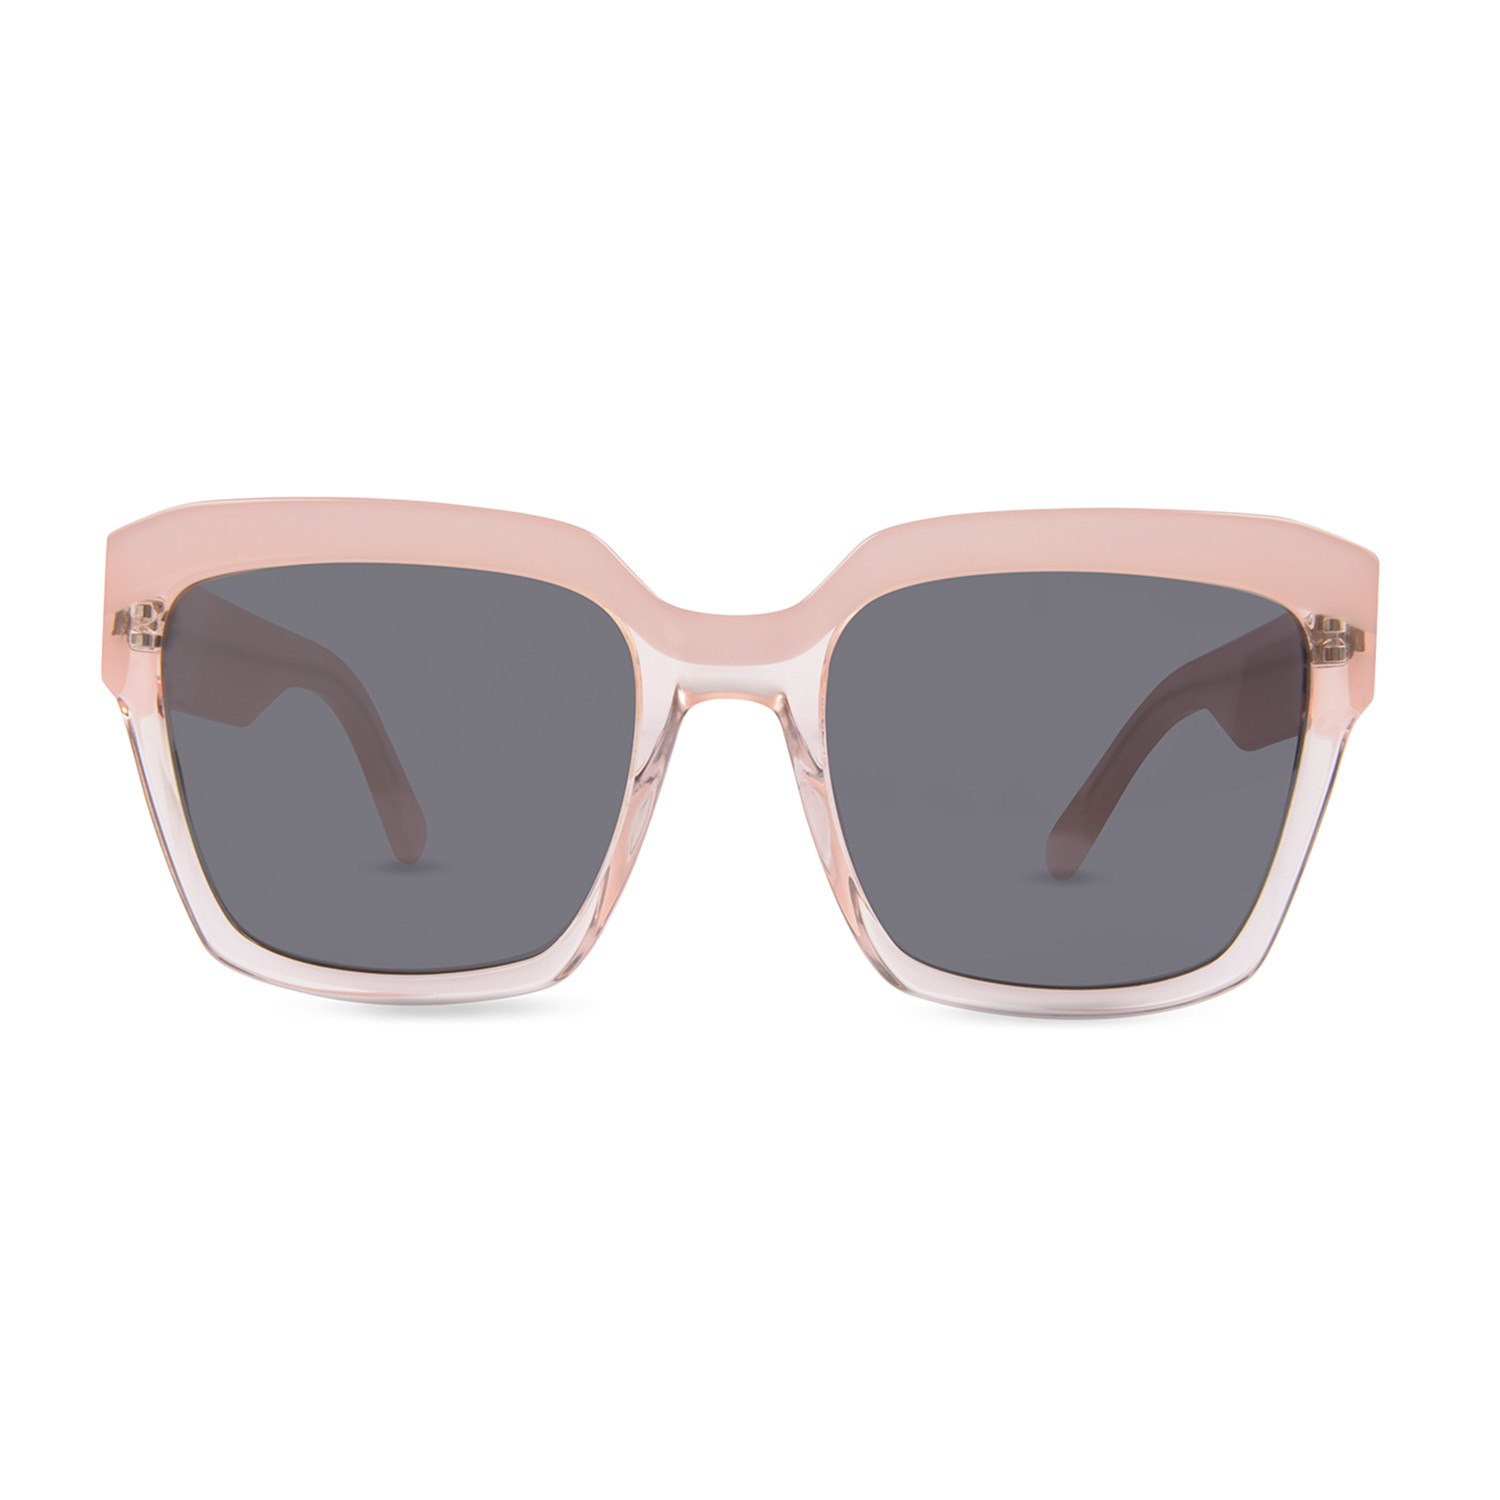 Women's Matilda Sunglasses (Green Lens + Light Tortoise Frame) - Finlay ...